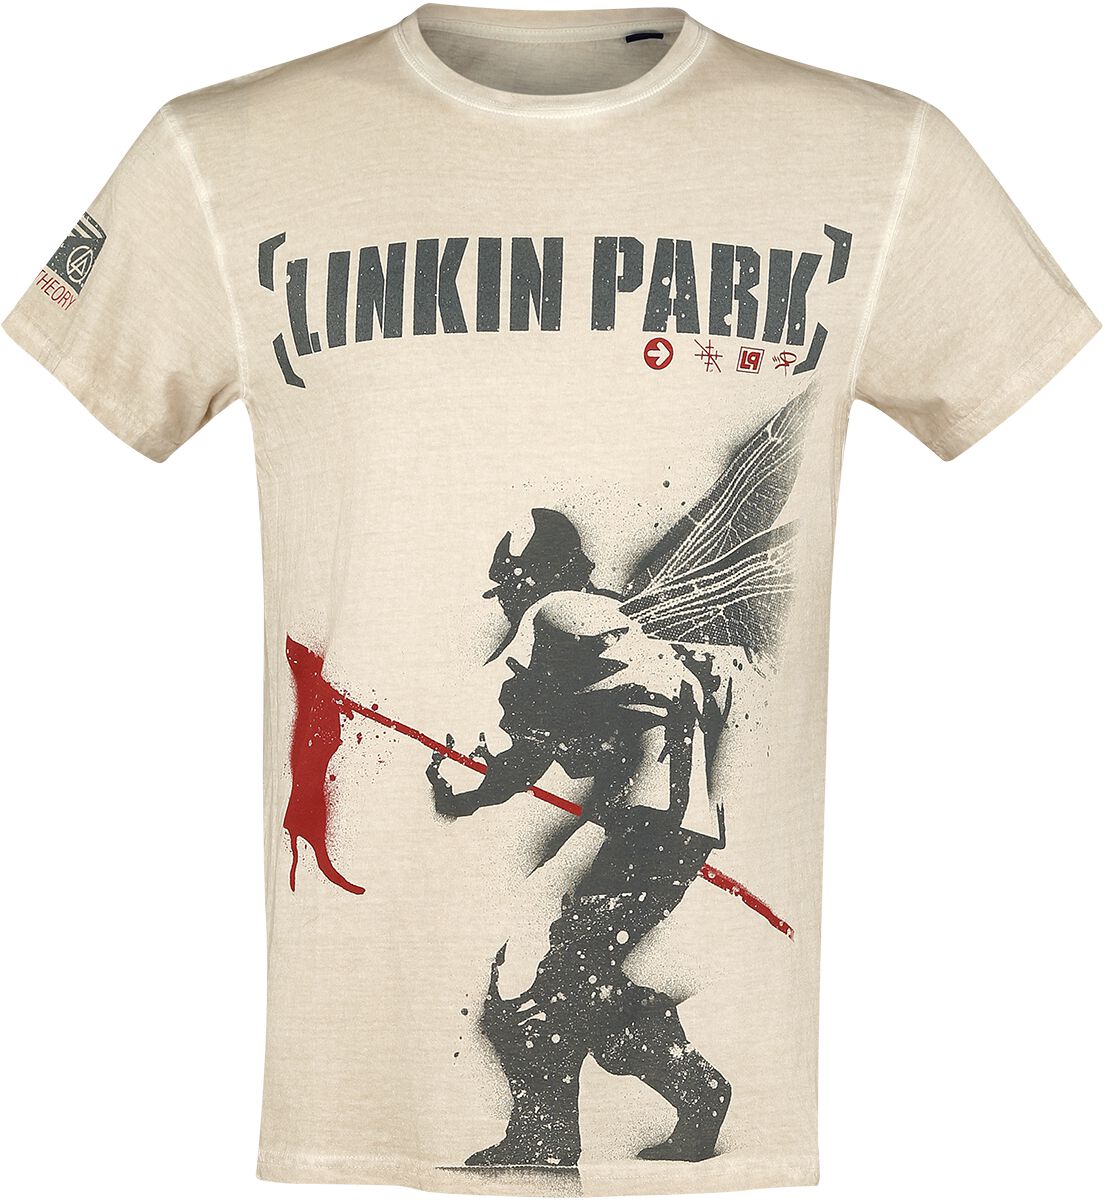 Linkin Park T-Shirt - Hybrid Theory - M bis 4XL - für Männer - Größe XXL - altweiß  - EMP exklusives Merchandise!